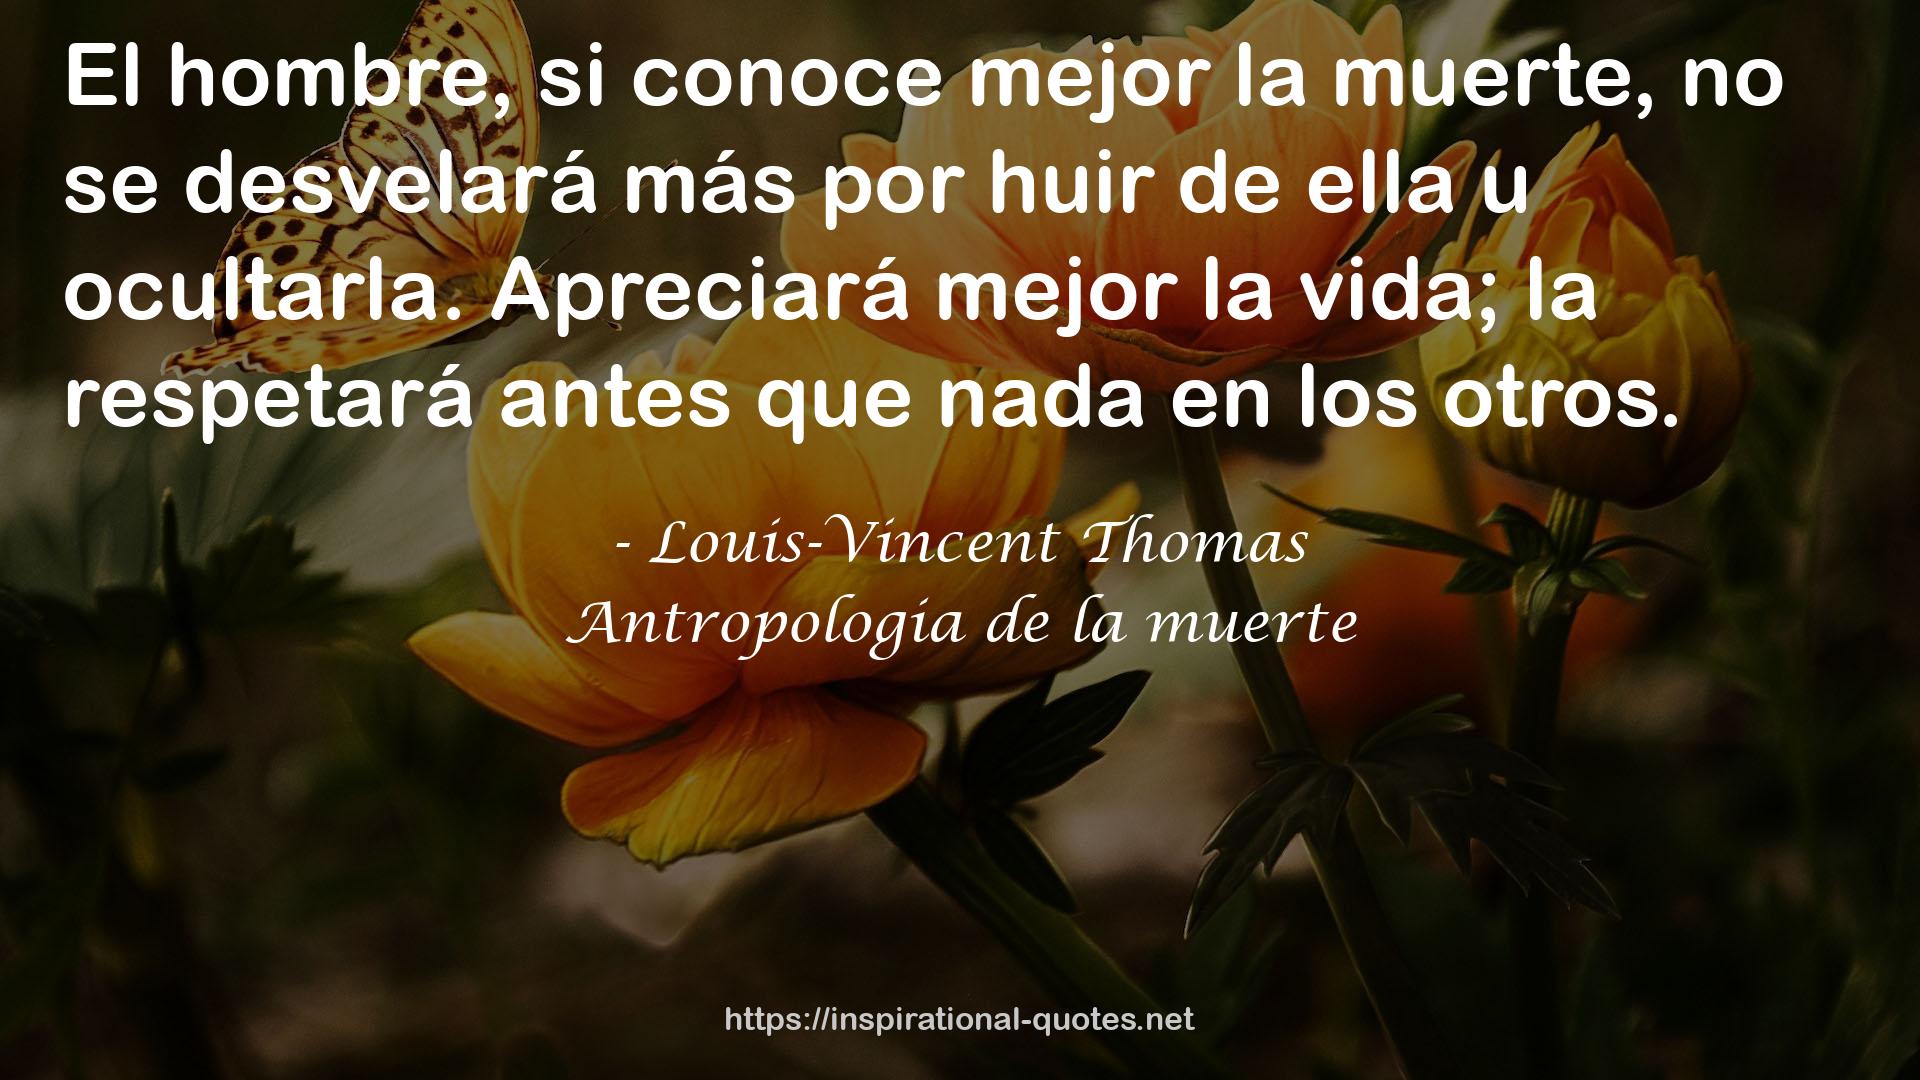 Louis-Vincent Thomas QUOTES